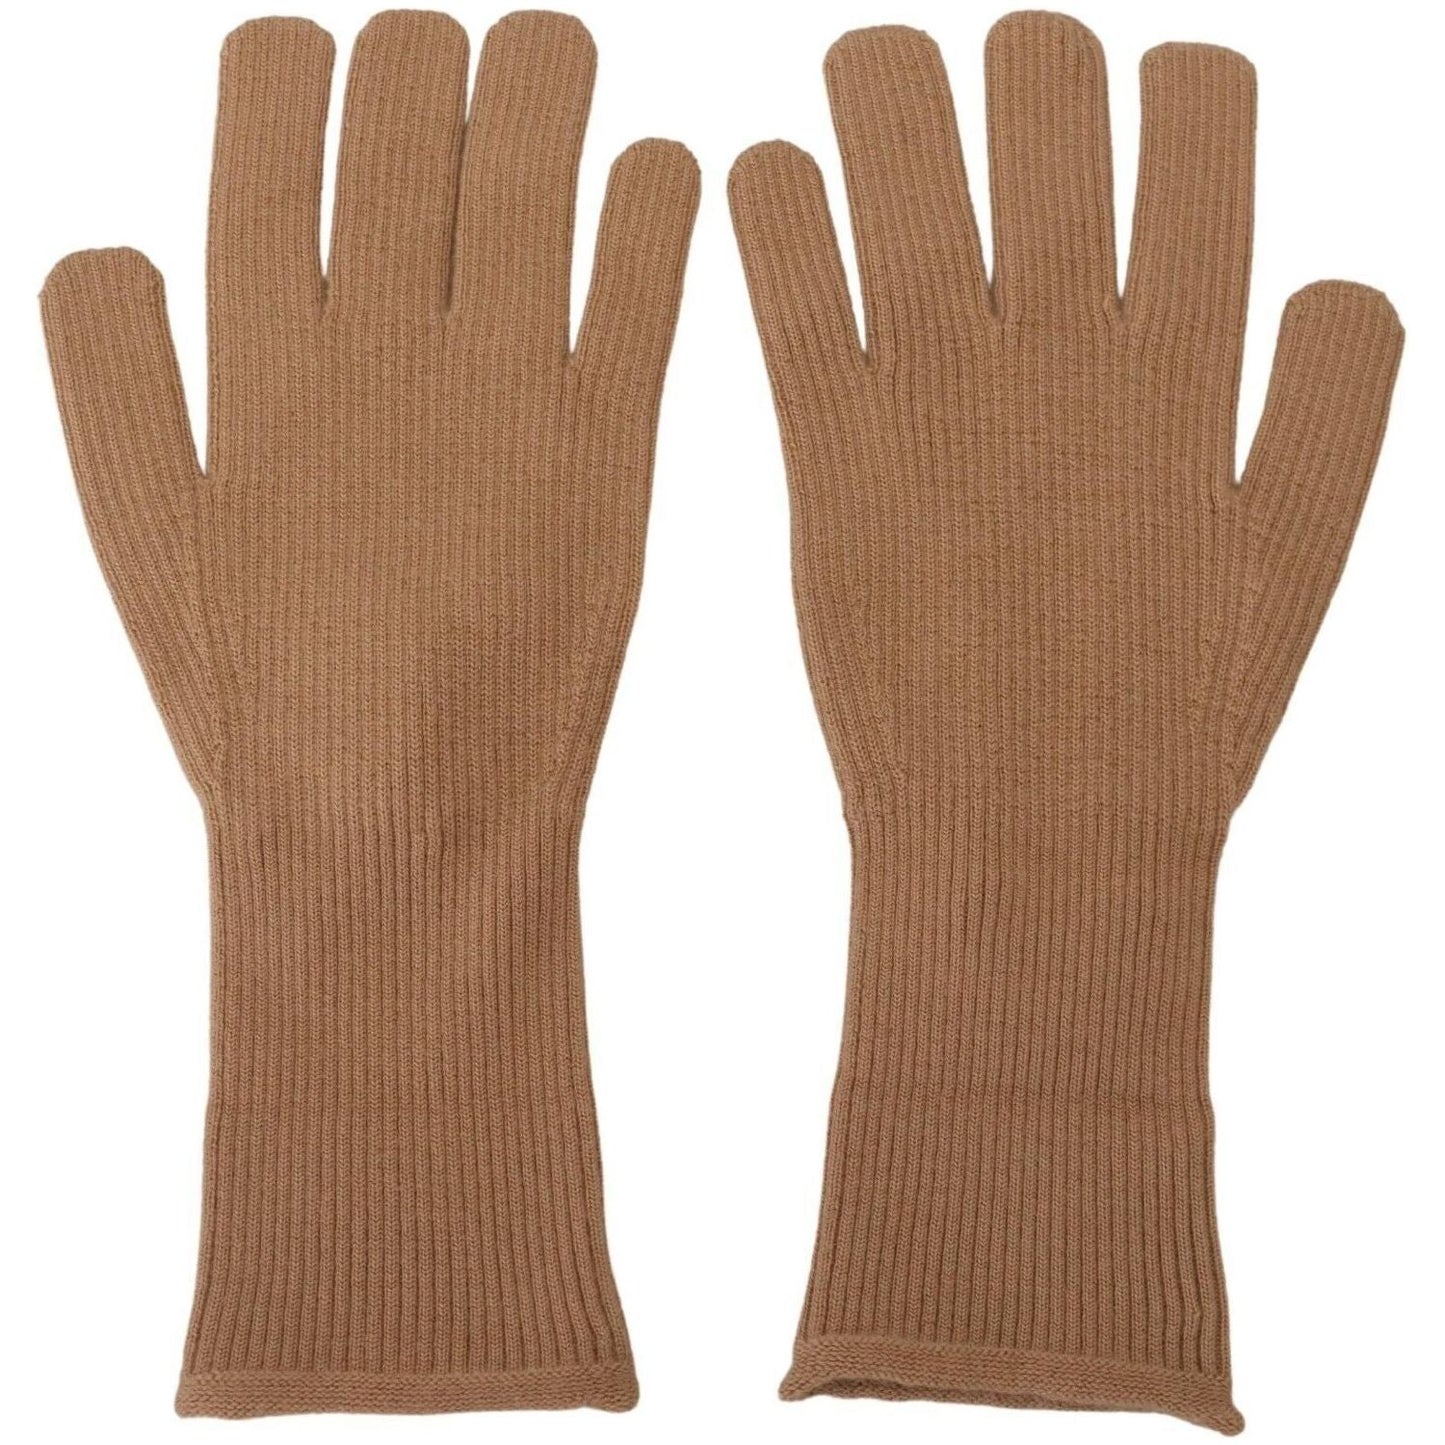 Dolce & Gabbana Elegant Beige Cashmere Winter Gloves beige-cashmere-knitted-hands-mitten-mens-gloves s-l1600-16-4-2b347e52-cae.jpg